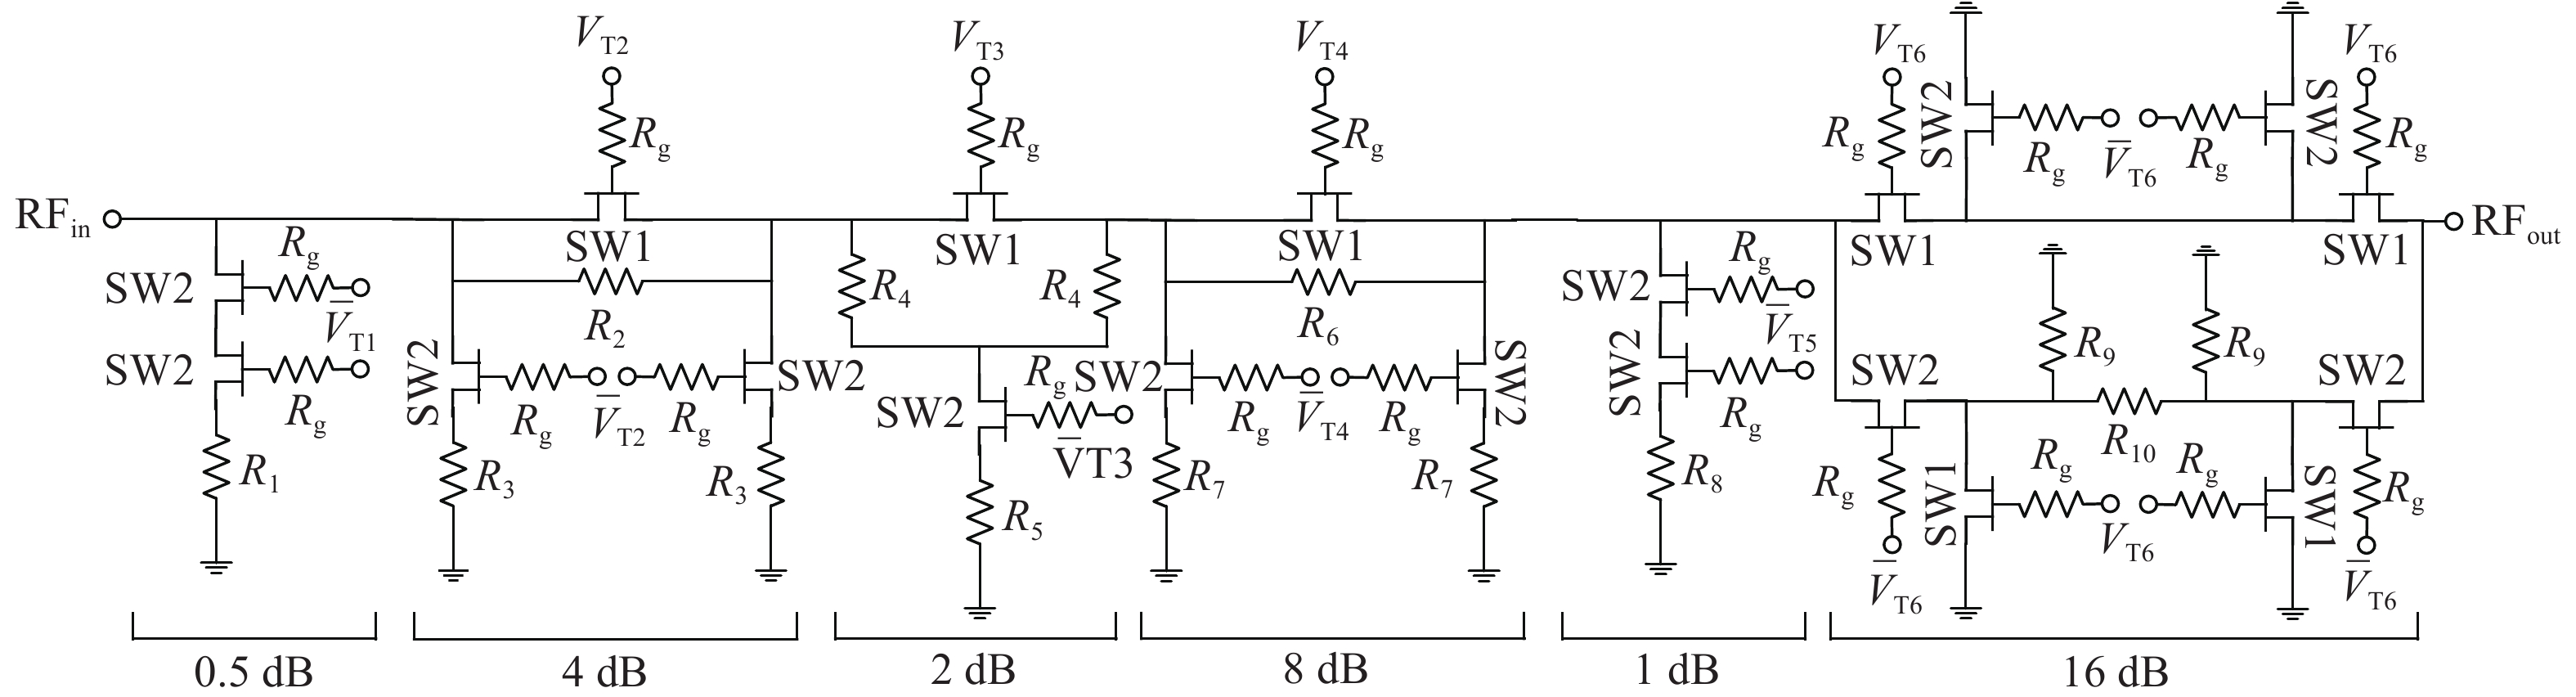 Circuit topology of digital attenuator